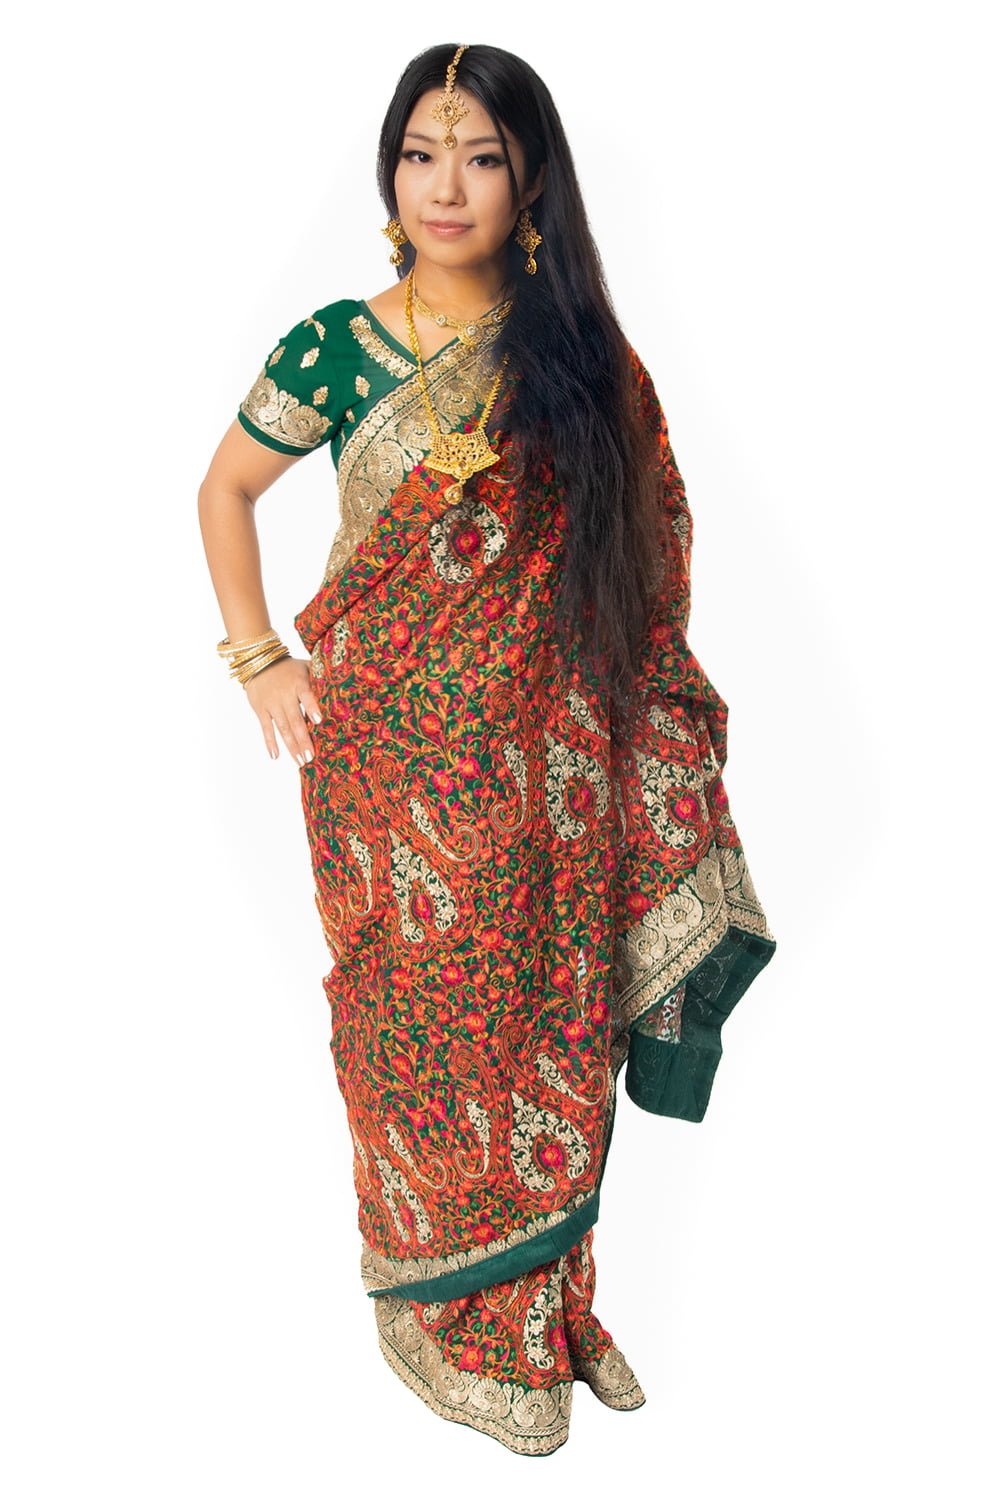 インド民族衣装 サリー クジャクの豪華刺繍【6-10】